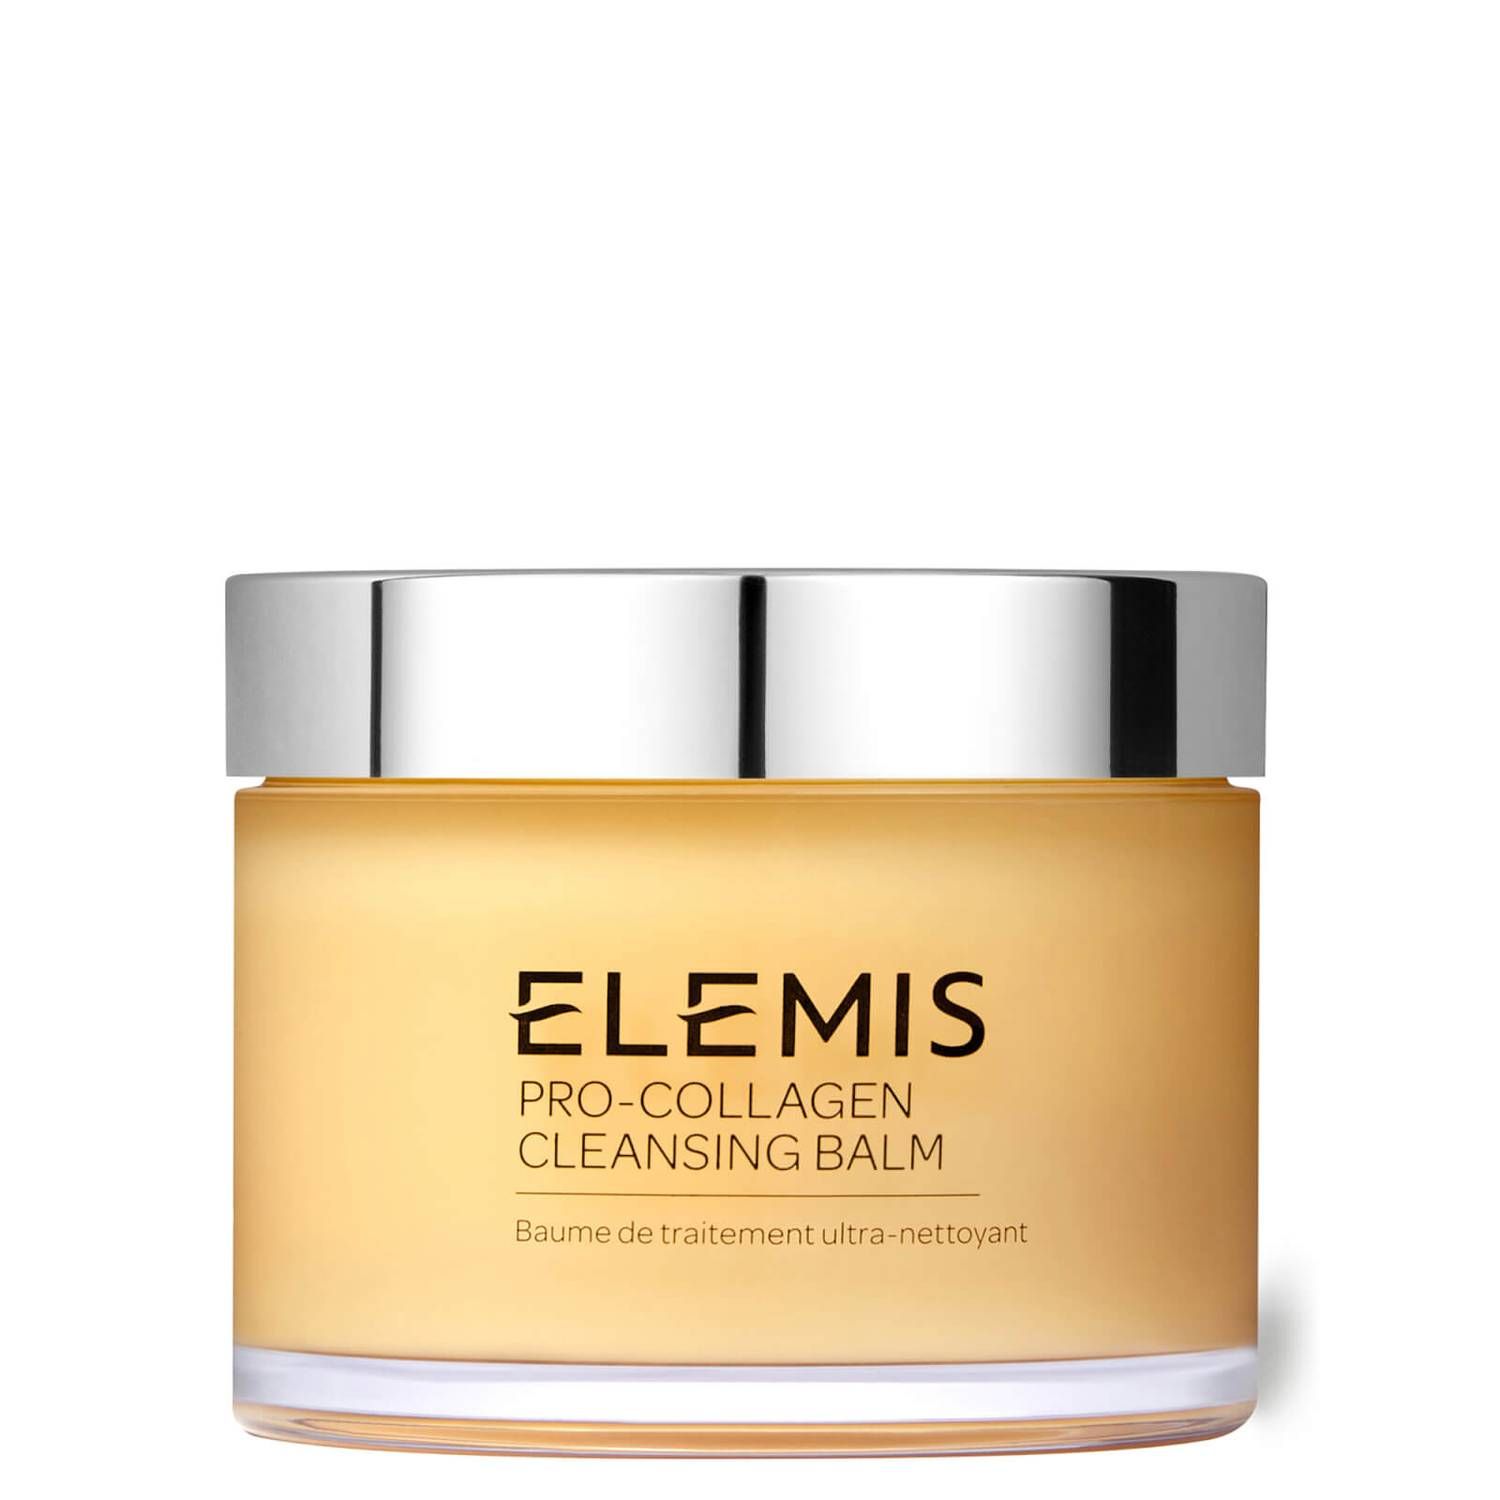 Elemis Pro-Collagen Cleansing Balm 200g | Dermstore (US)